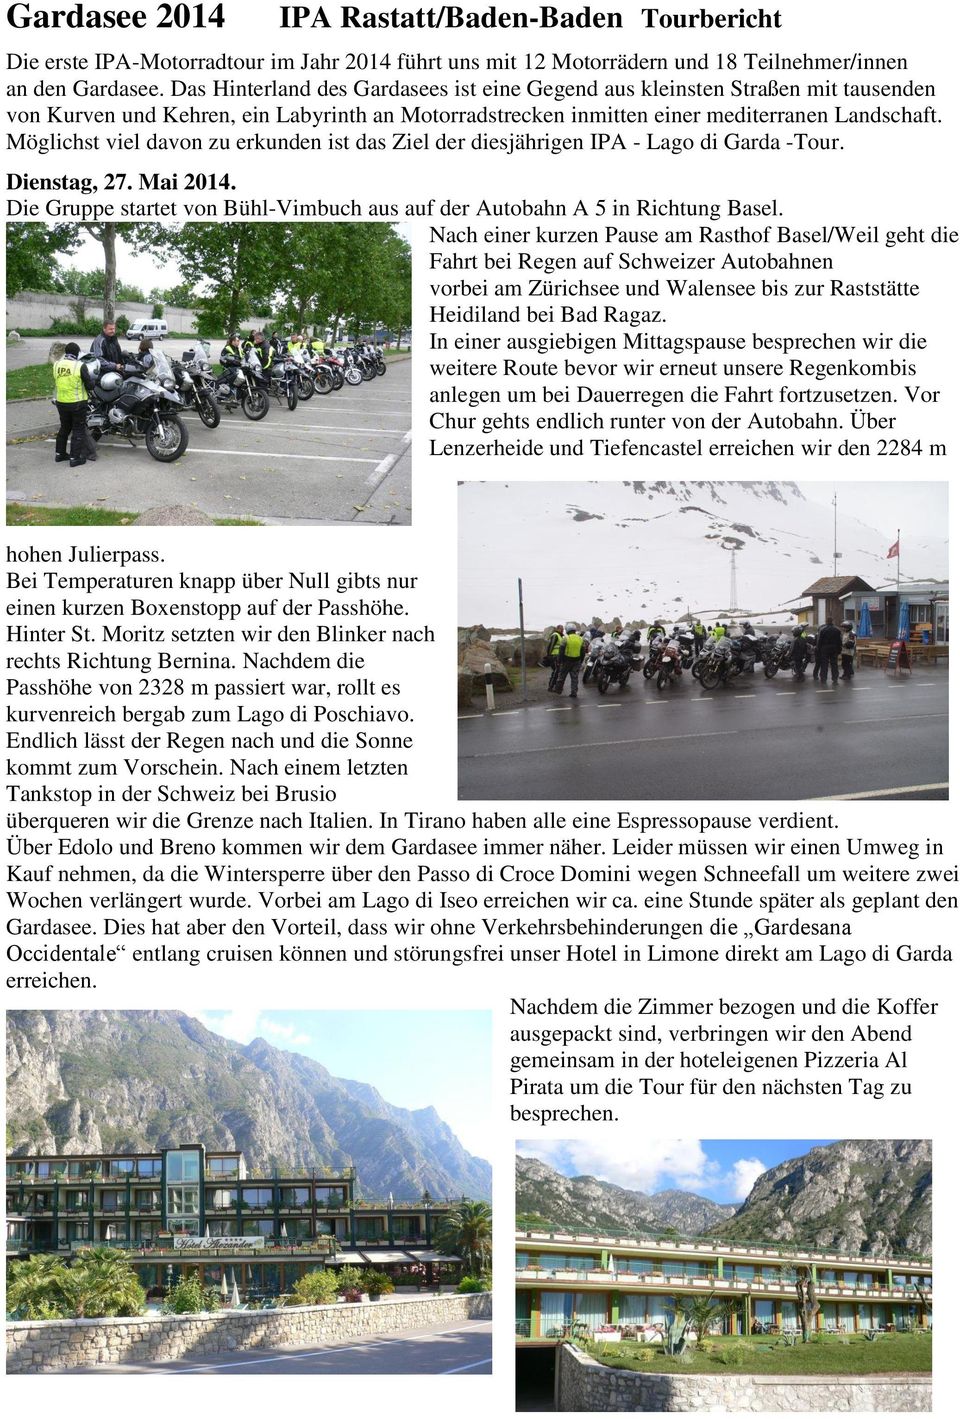 Möglichst viel davon zu erkunden ist das Ziel der diesjährigen IPA - Lago di Garda -Tour. Dienstag, 27. Mai 2014. Die Gruppe startet von Bühl-Vimbuch aus auf der Autobahn A 5 in Richtung Basel.